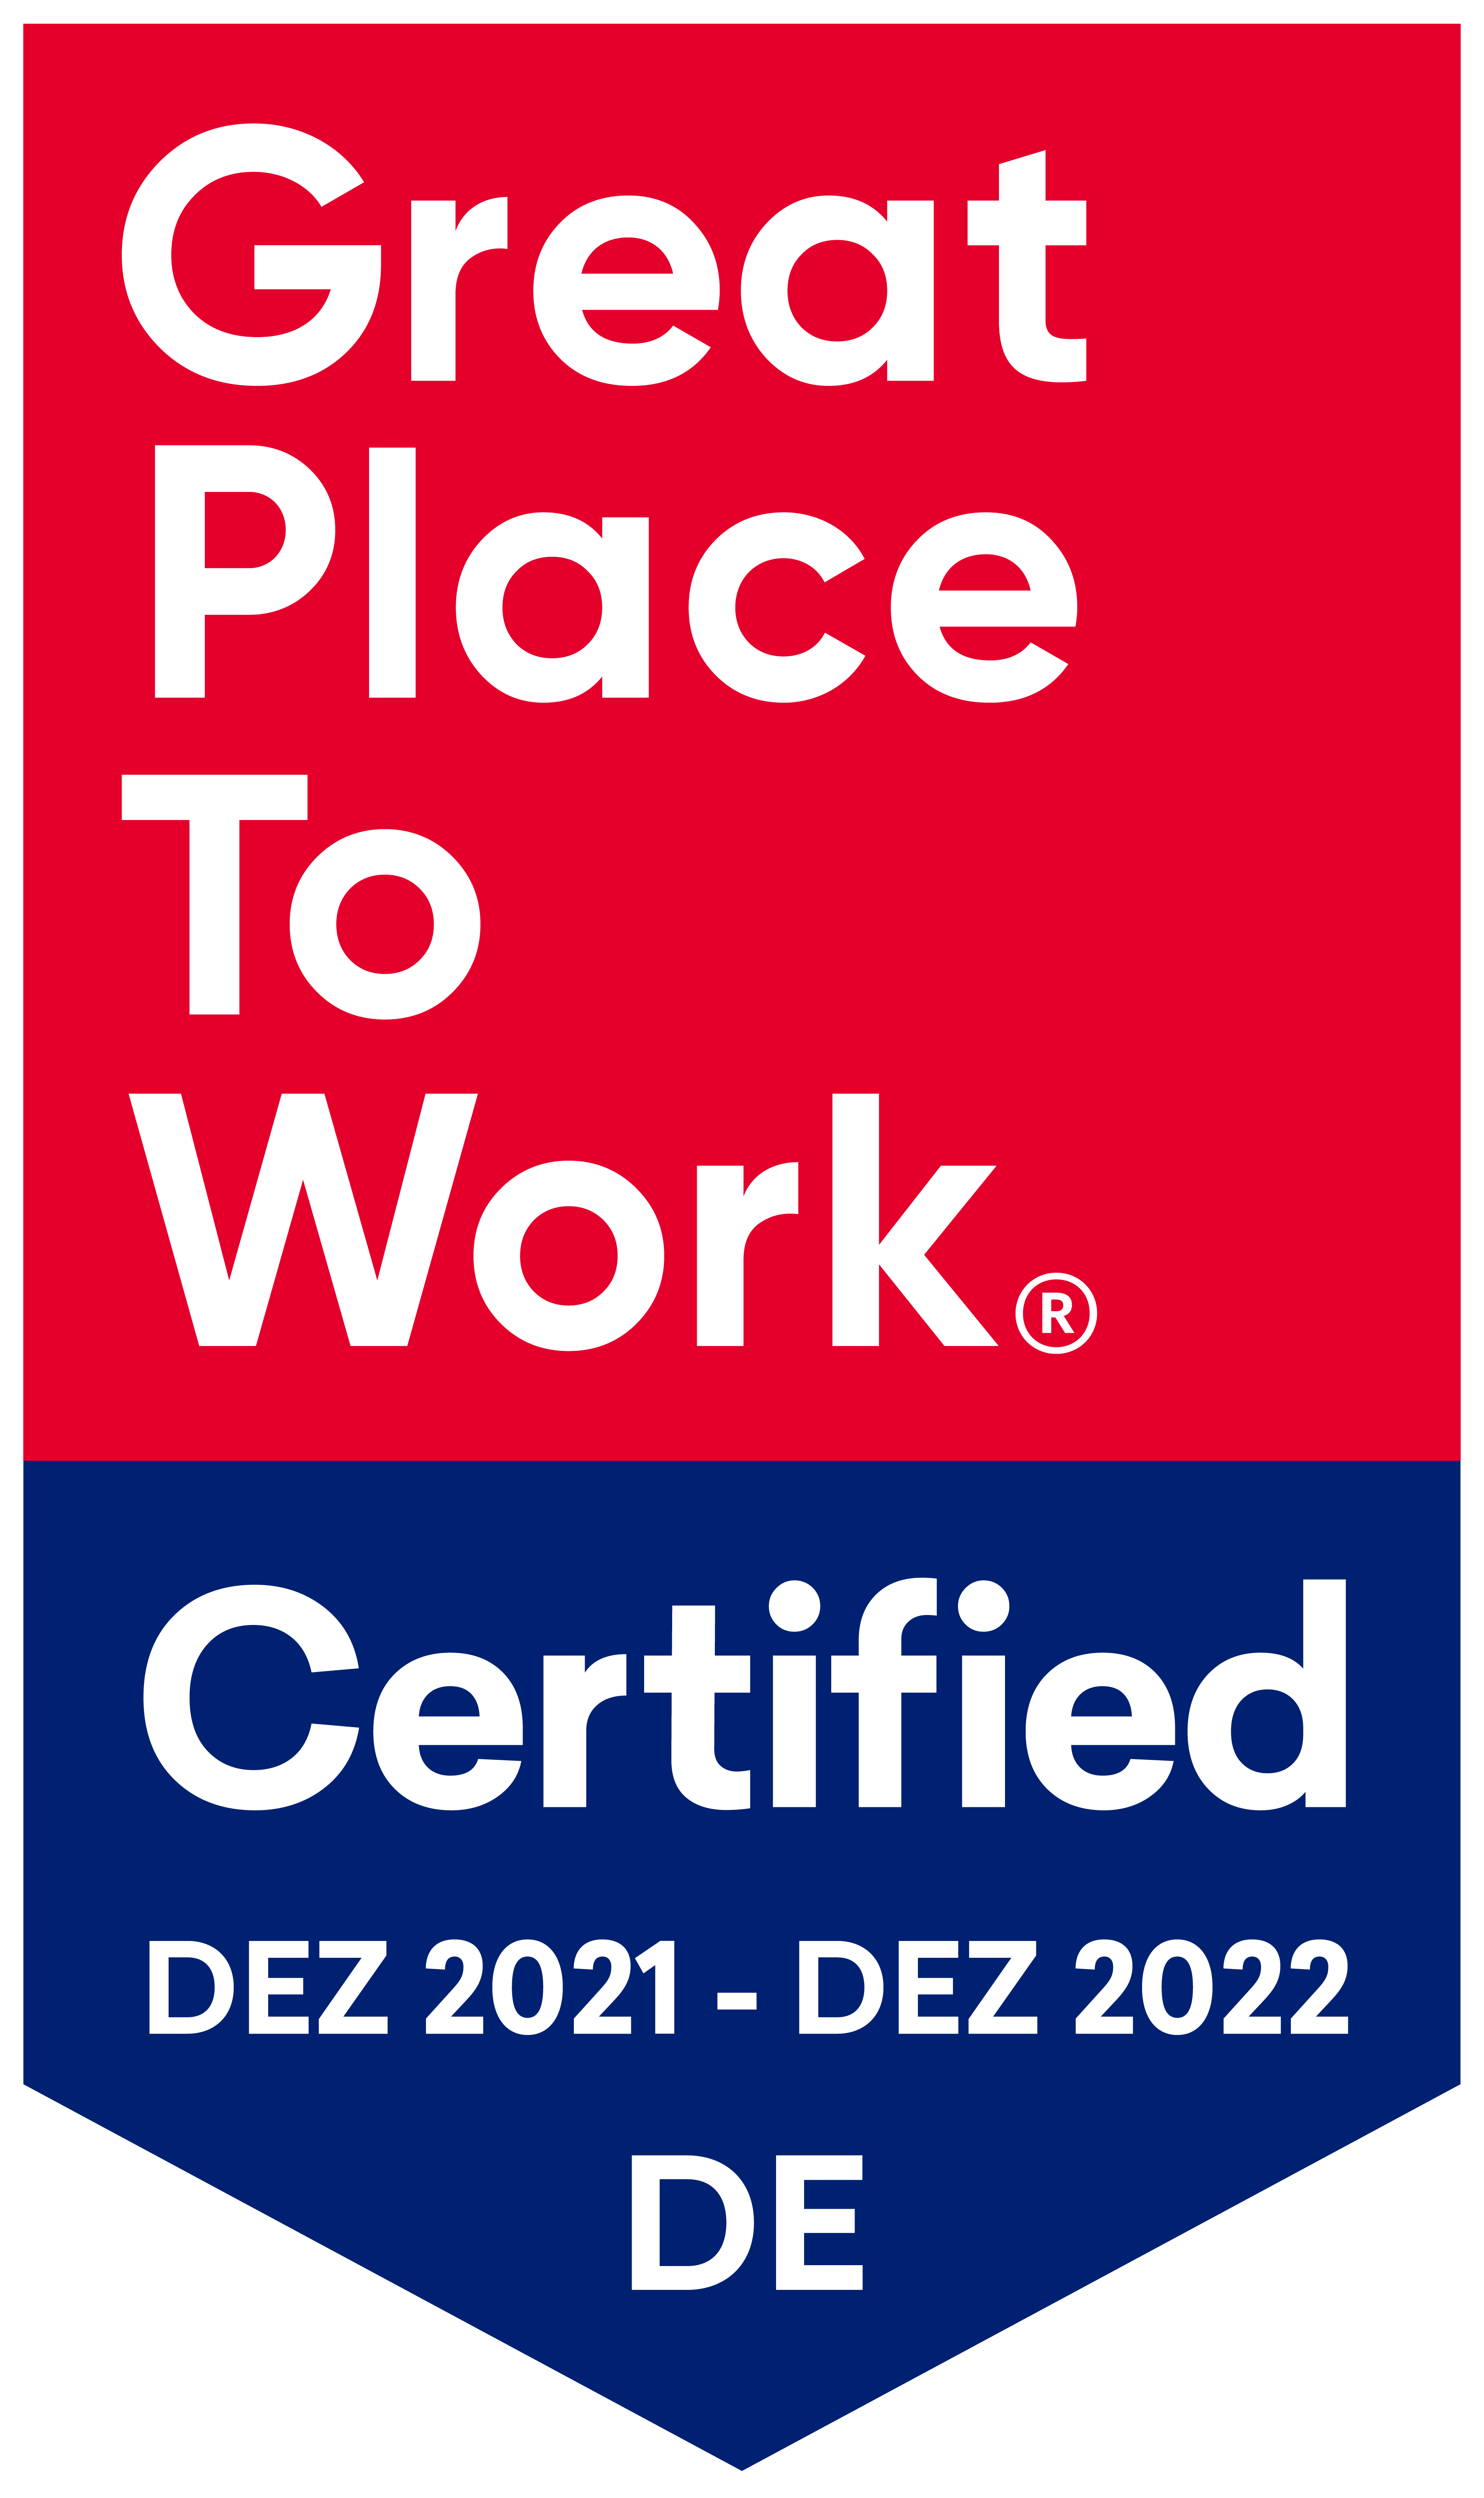 Logo, das UX&I als zertifizierten "Great Place To Work" auszeichnet